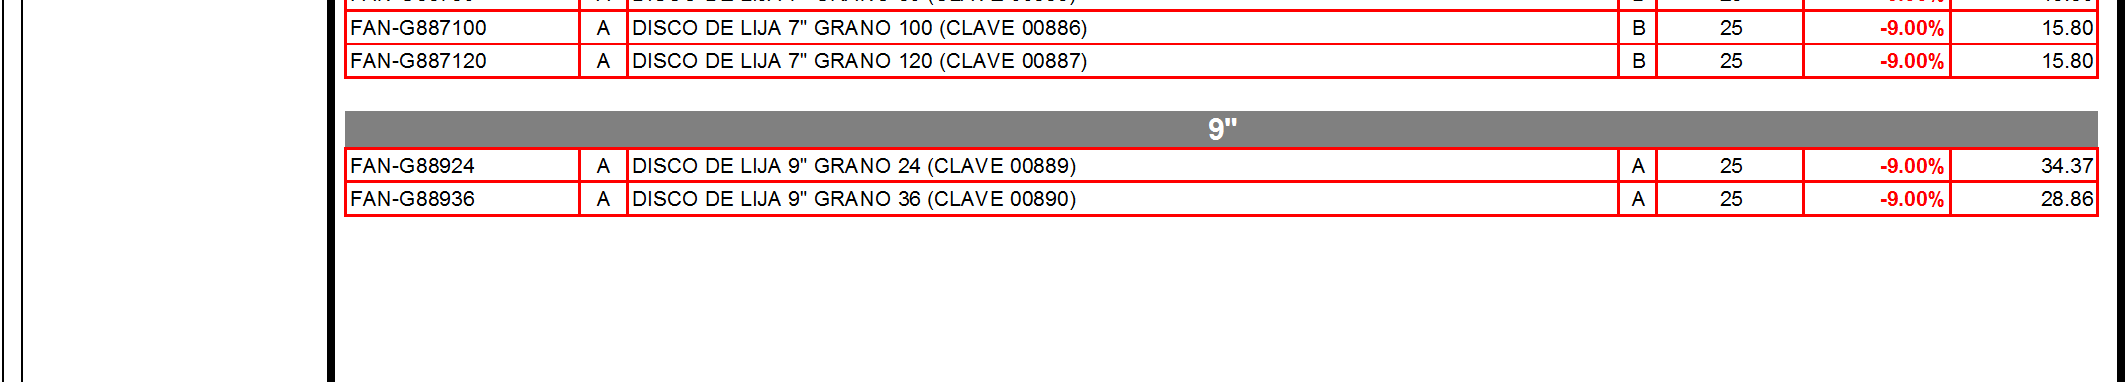 66 FAN-G8841/2-36 A DISCO DE LIJA 4 1/2" GRANO 36 (CLAVE 00375) A 25-9.00% 10.34 FAN-G8841/2-50 A DISCO DE LIJA 4 1/2" GRANO 50 (CLAVE 00376) B 25-9.00% 9.